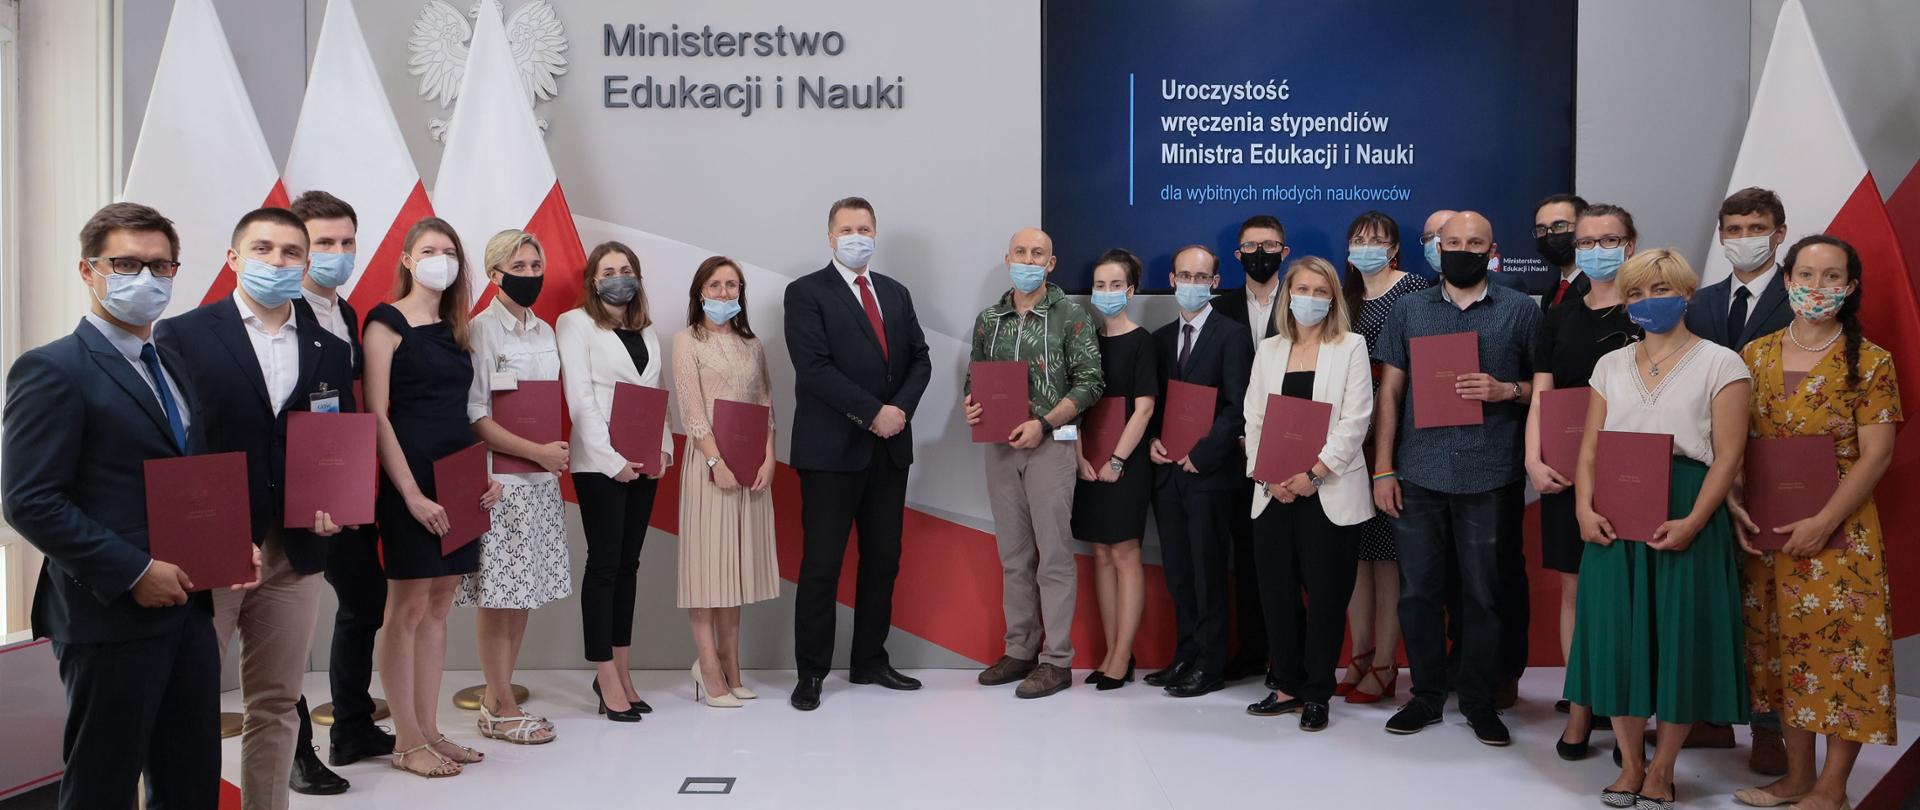 Minister Czarnek stoi w otoczeniu młodych naukowców, za nimi na ścianie napis Ministerstwo Edukacji i Nauki i polskie flagi.